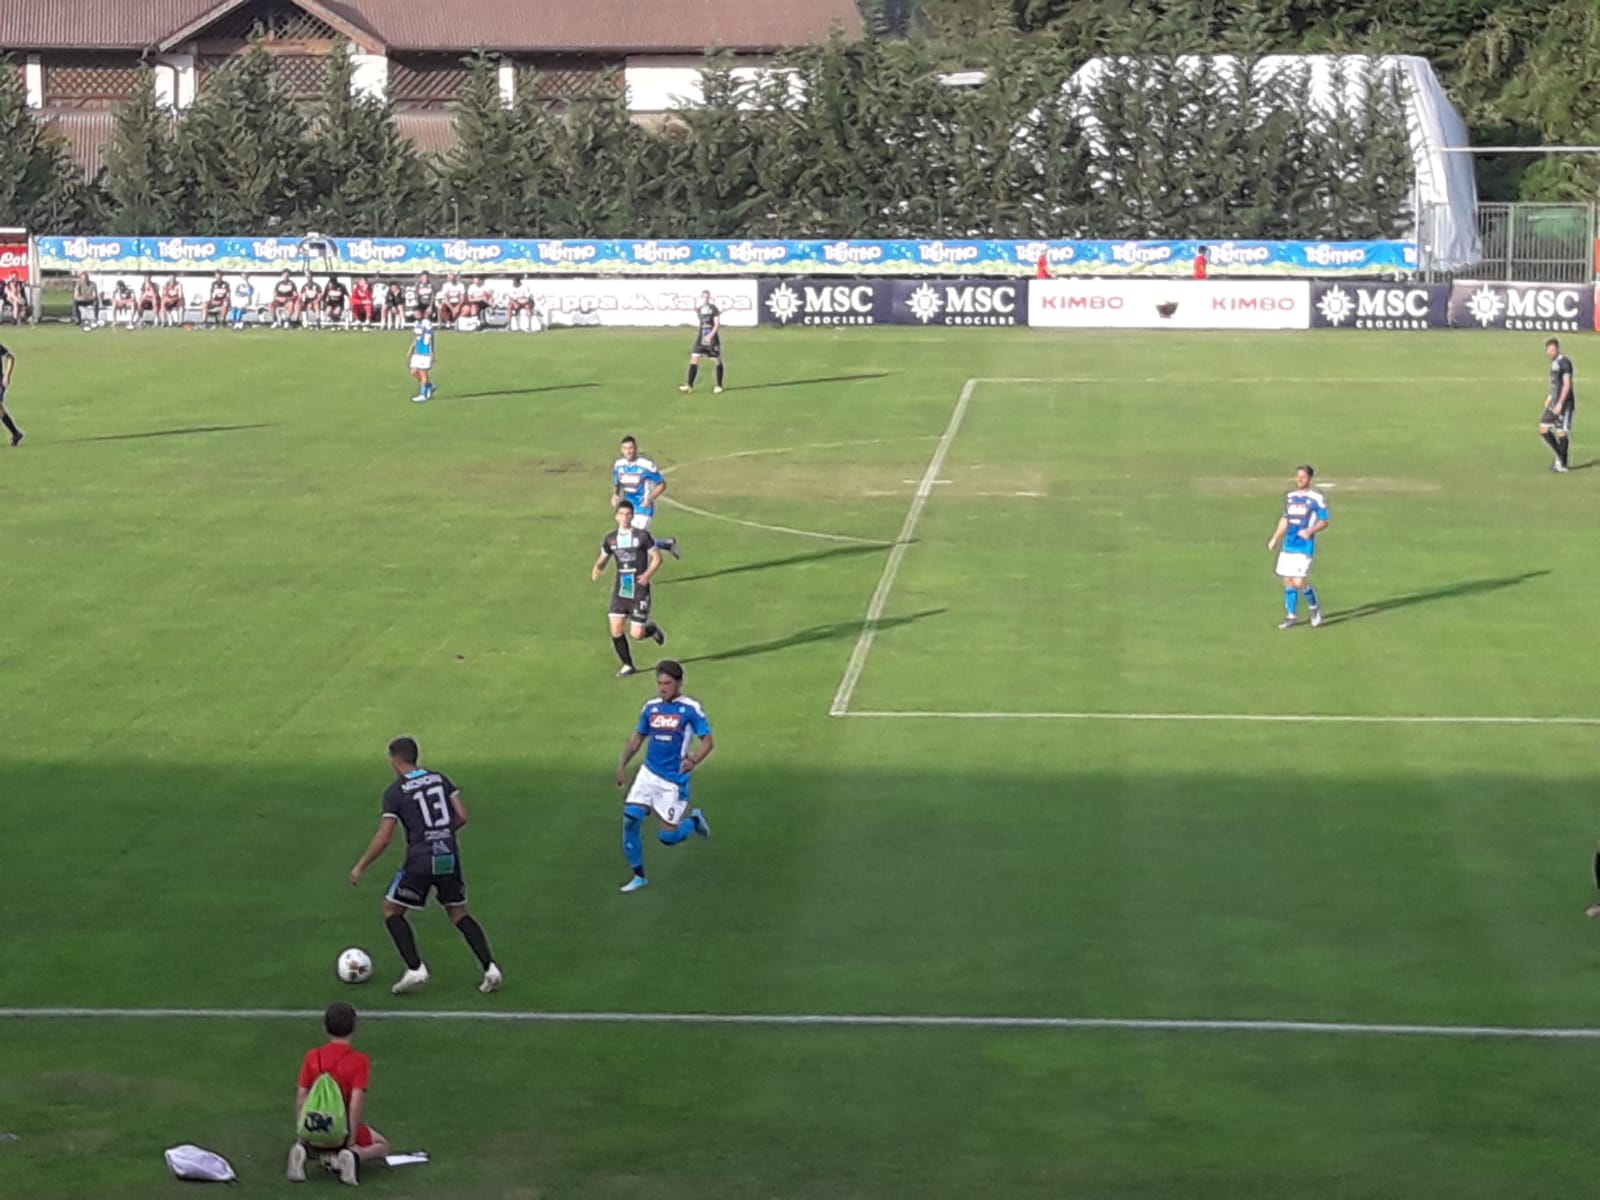 Napoli-FeralpiSalò 5-0. Azzurri brillanti col 4-2-3-1, è subito gol per Manōlas